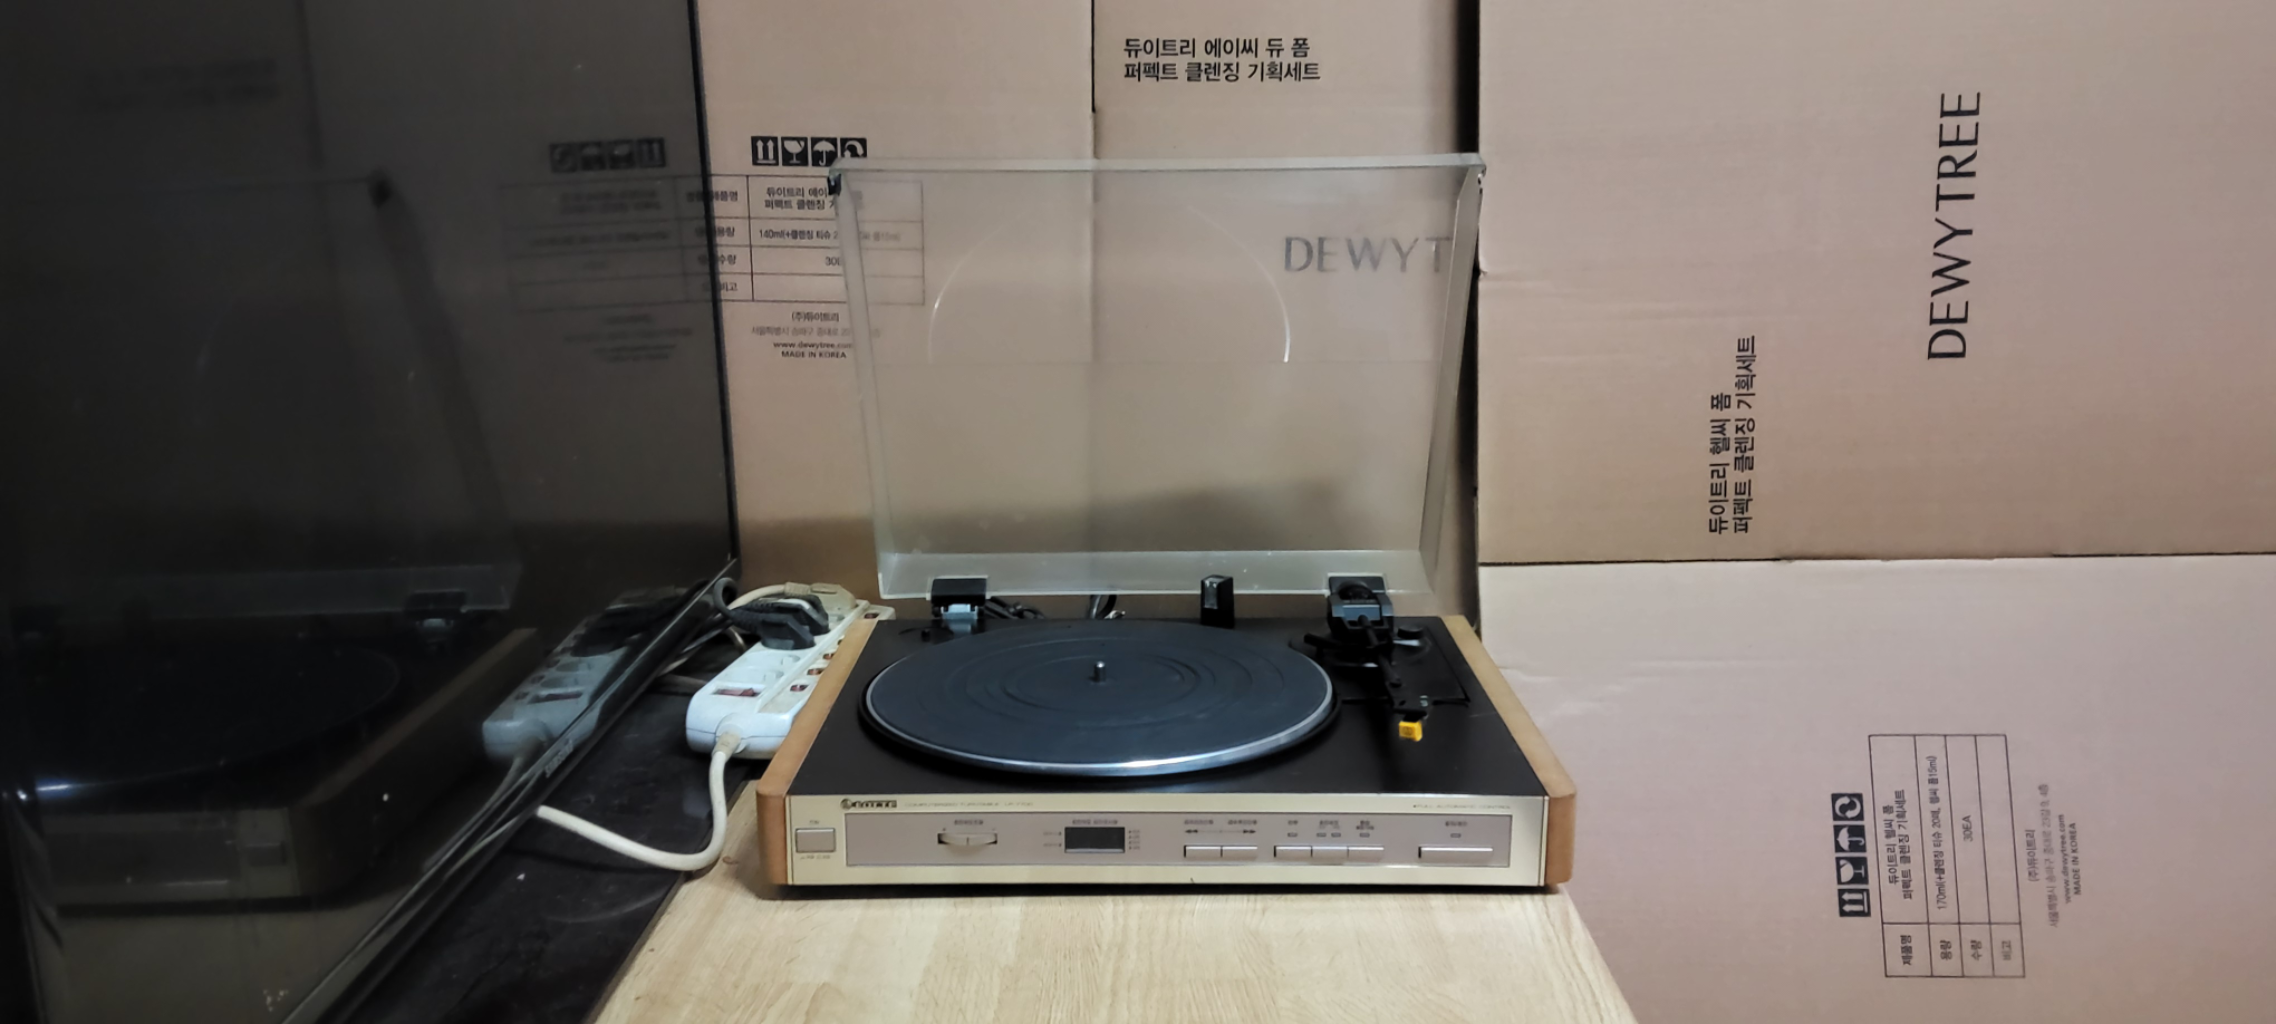 롯데 LP 7700 LP 턴테이블 (오디오 앰프 스피커